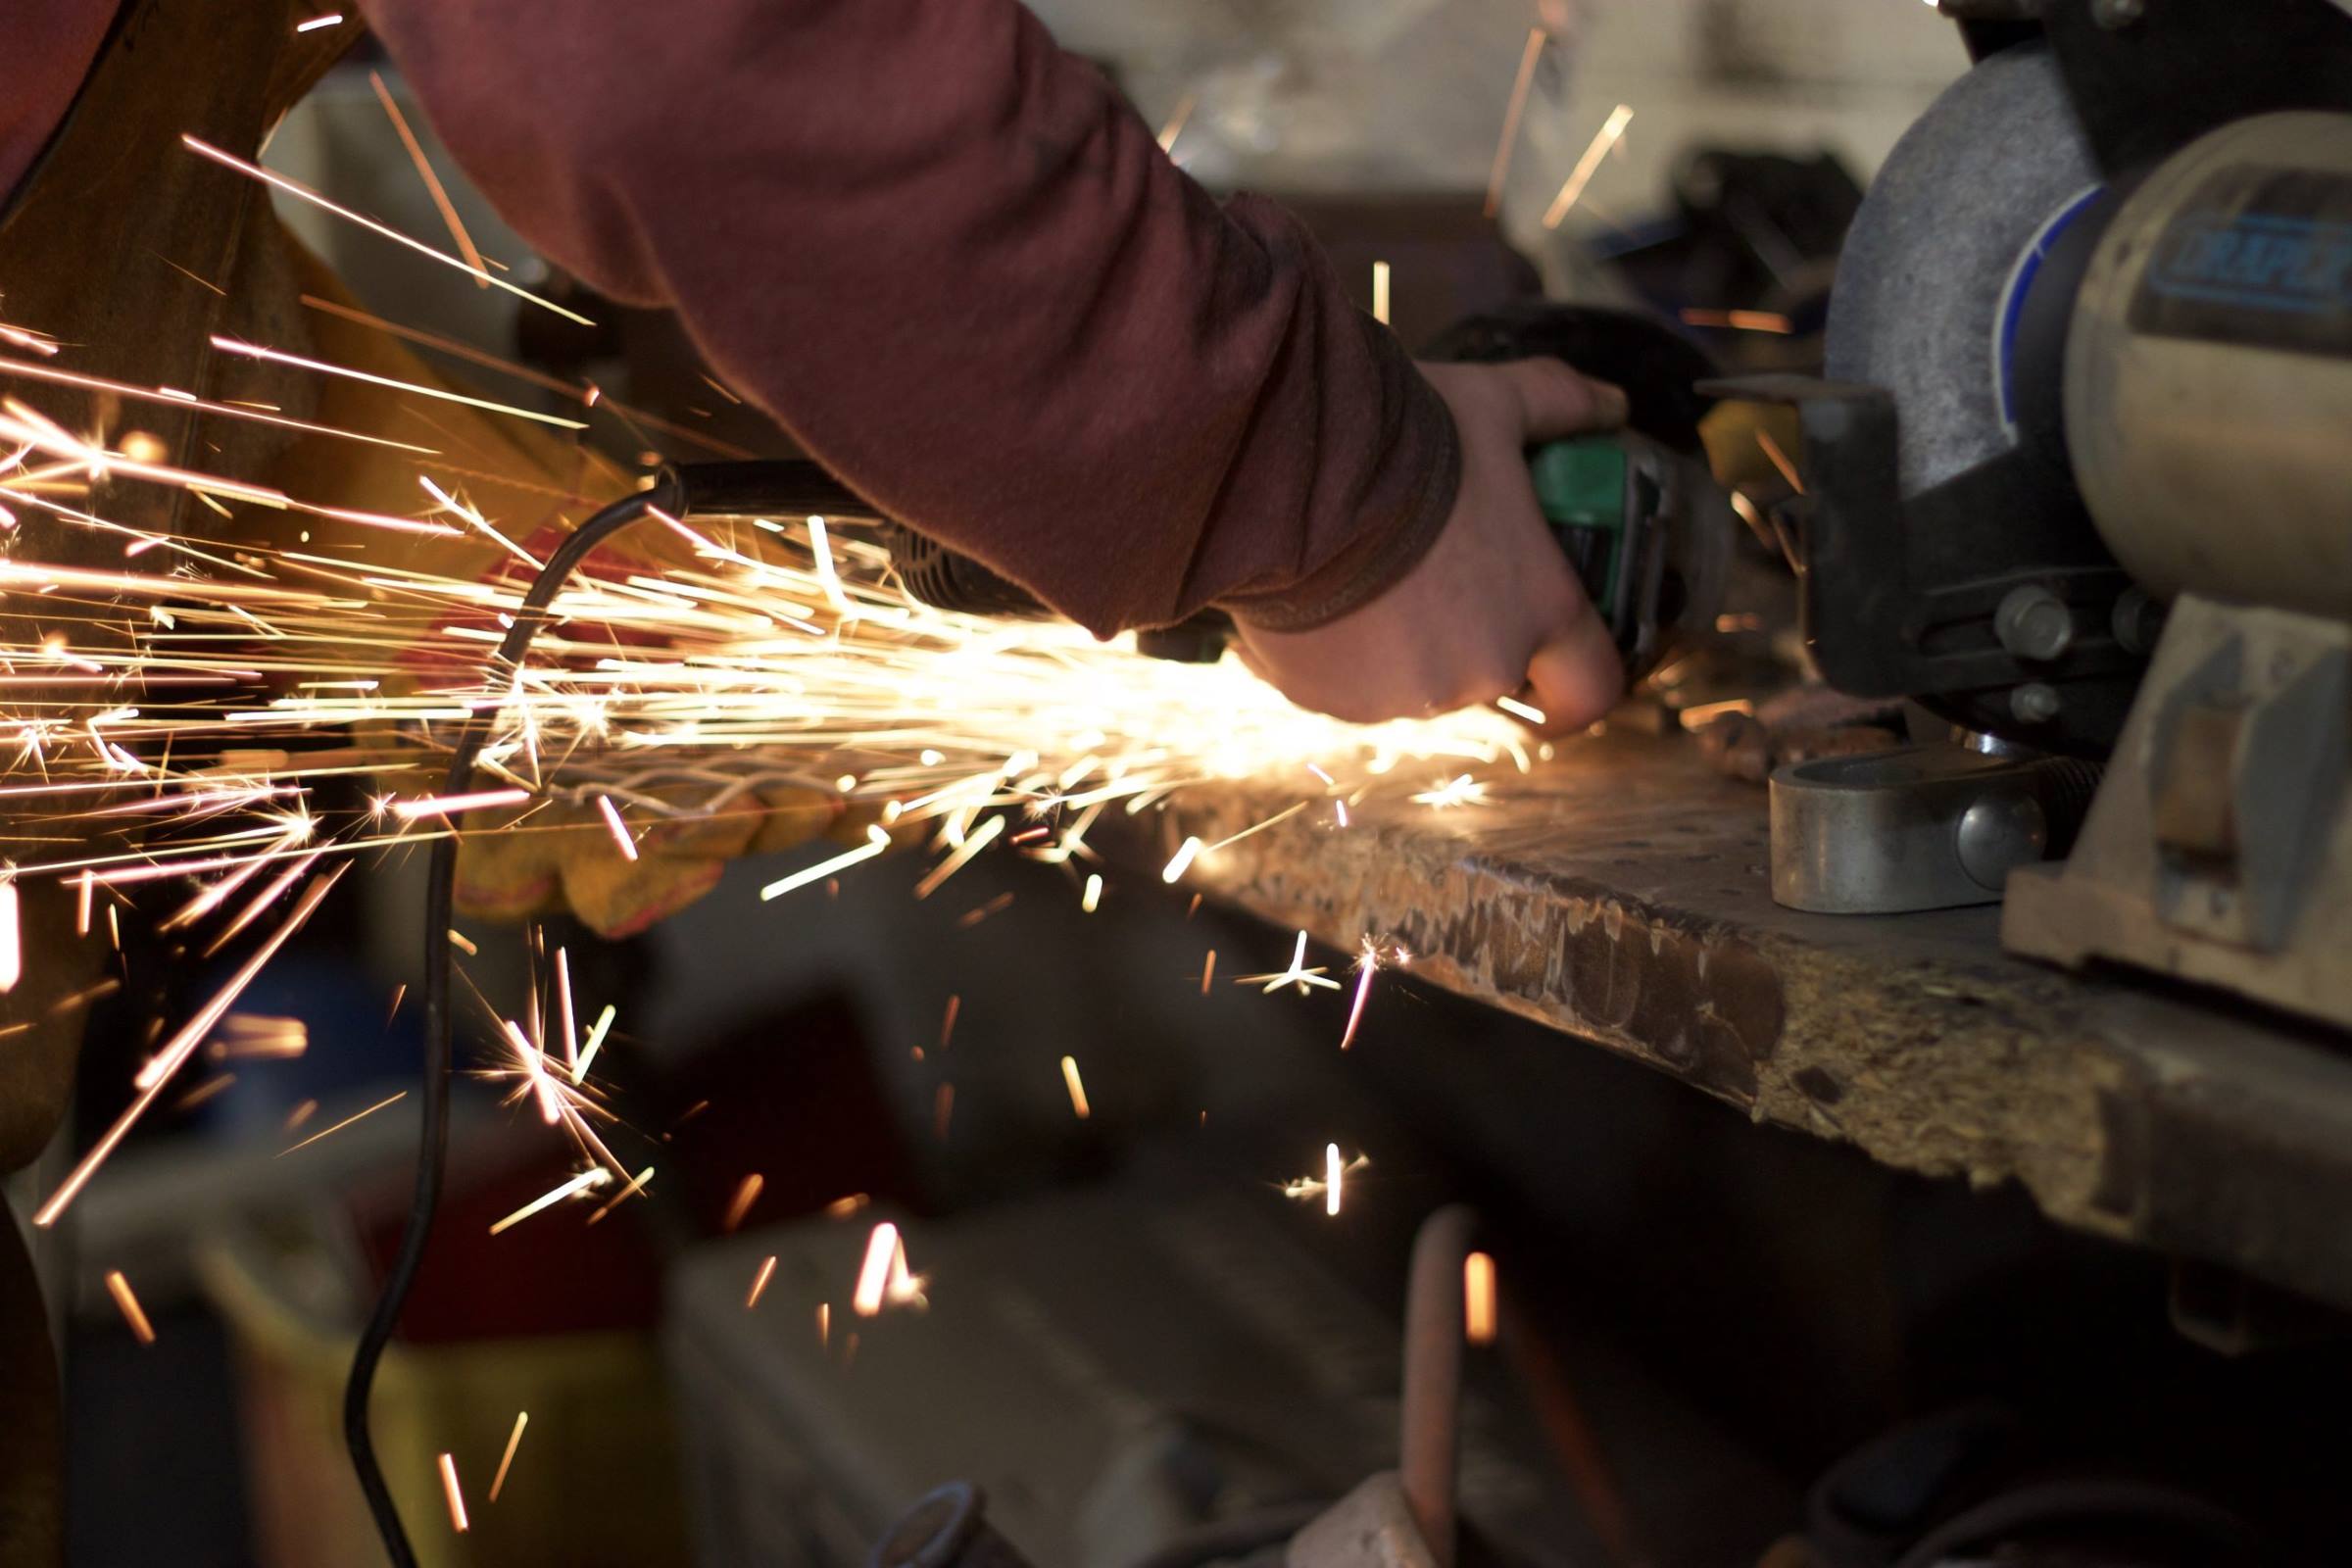 Worker grinder metal sparks